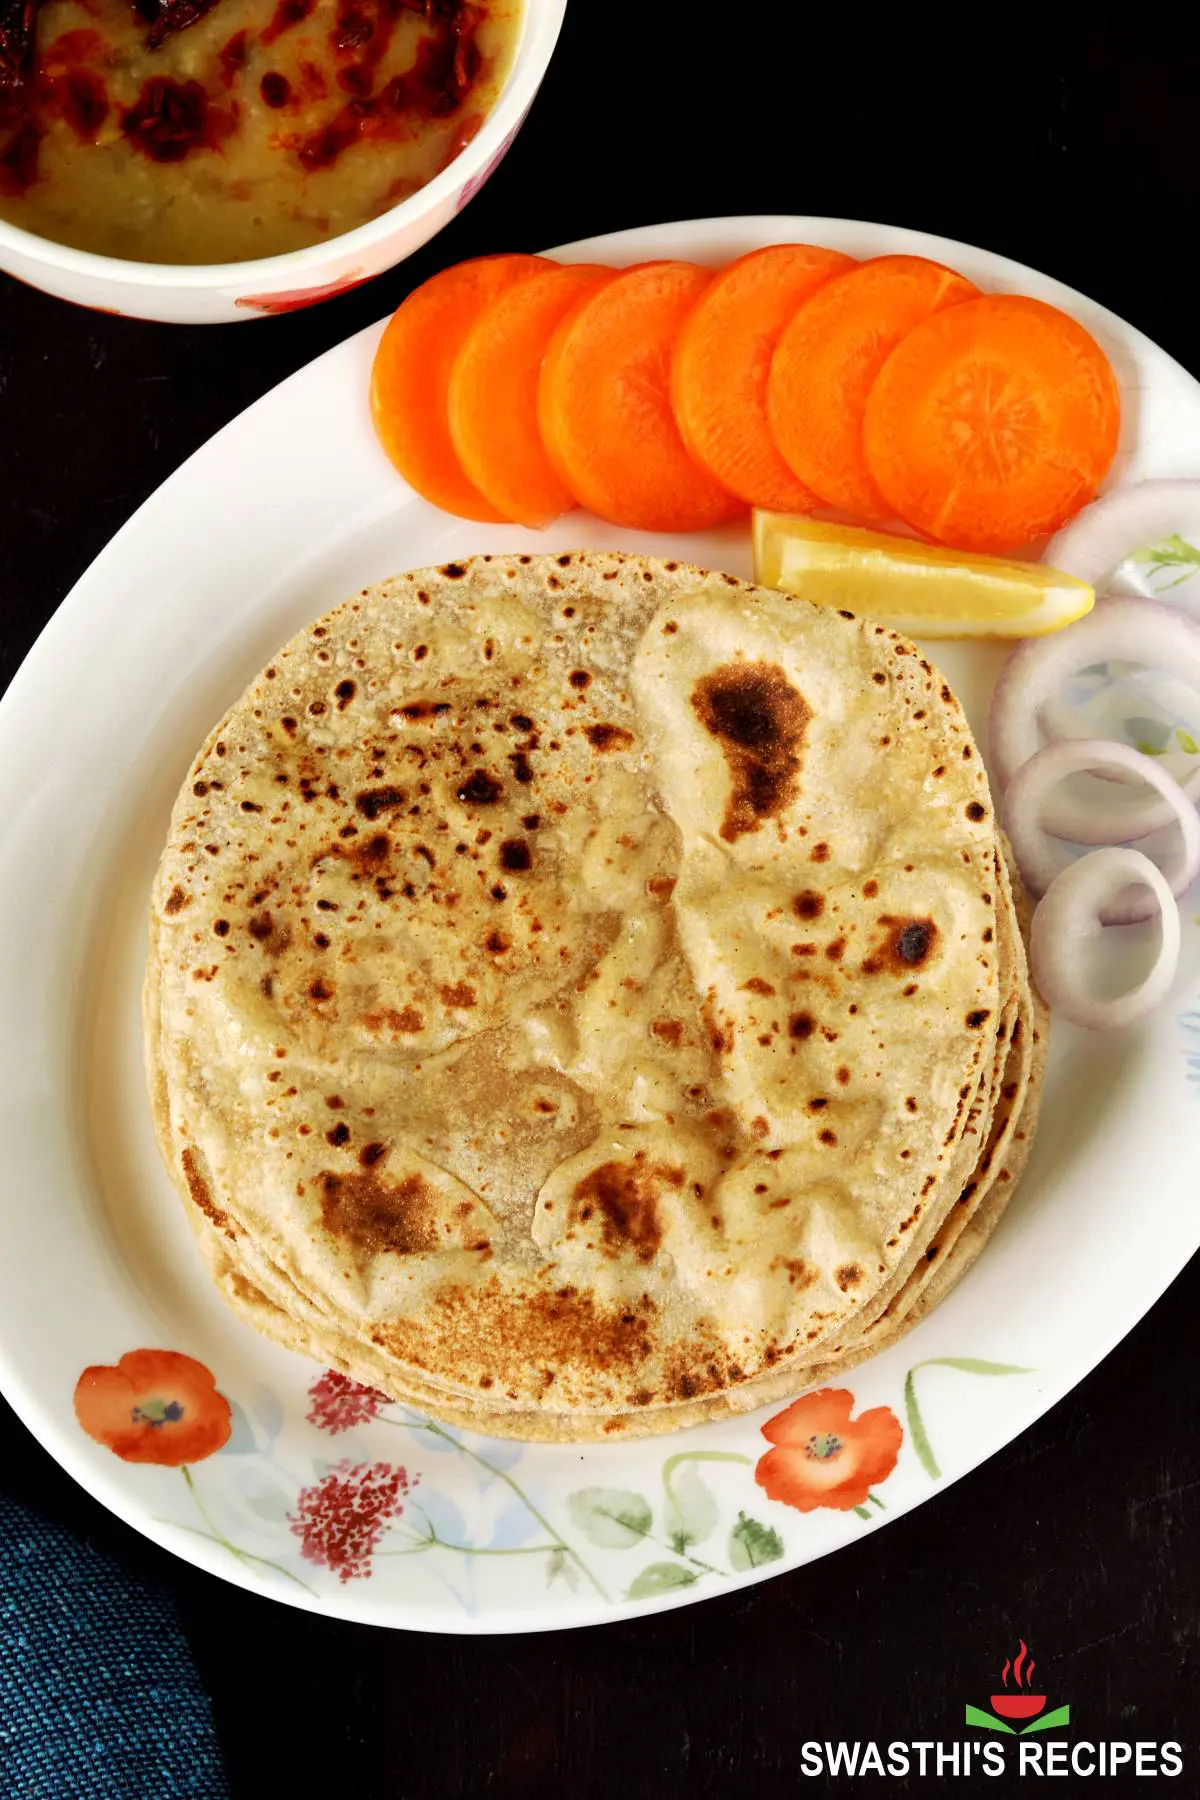 Indian iron tawa or pan to prepare chapati, roti on white